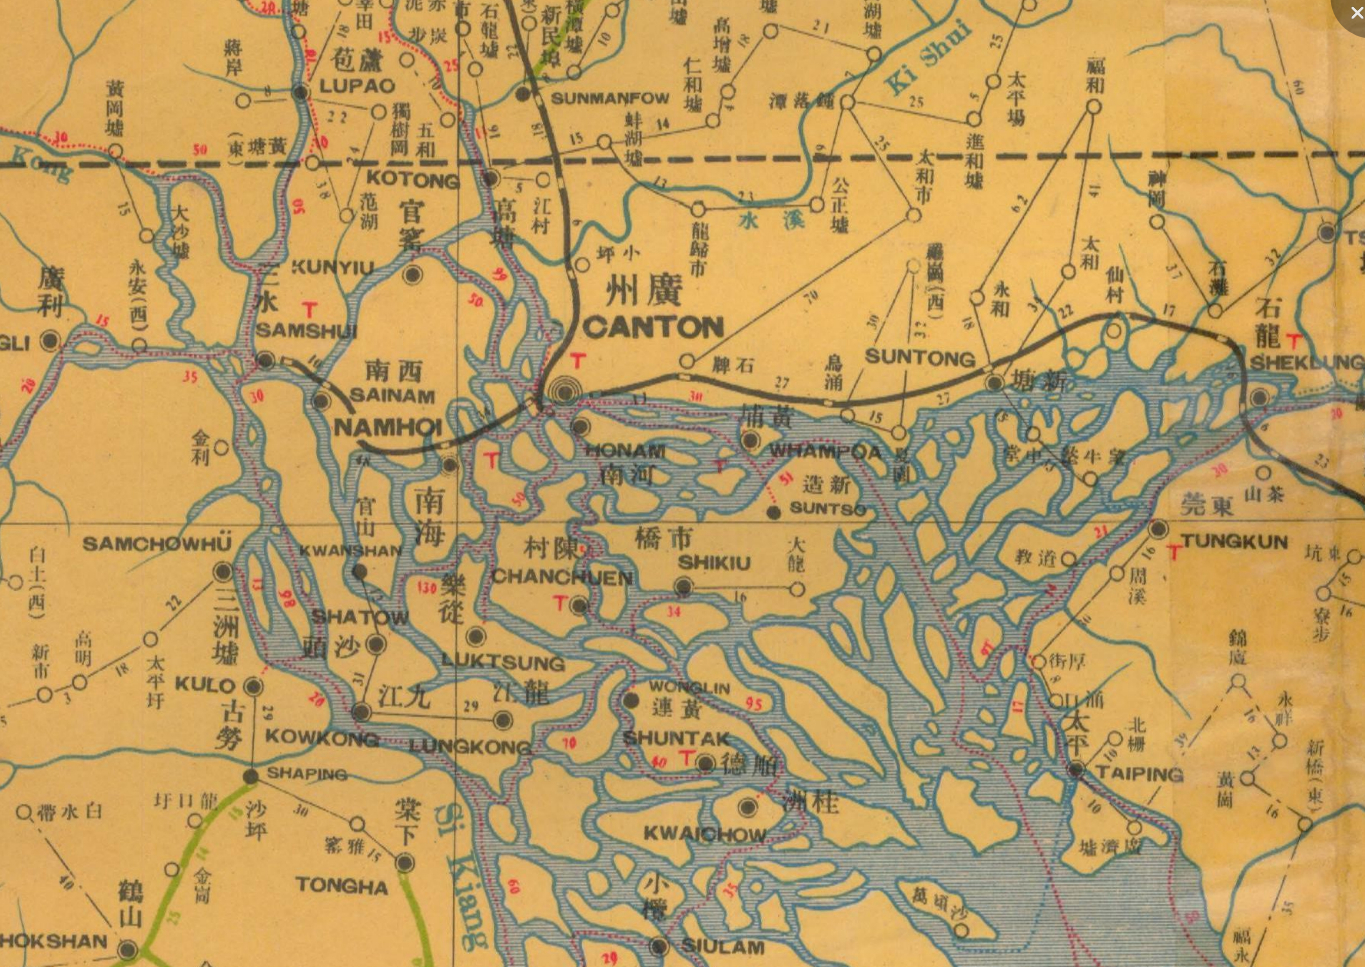 广州河流分布示意图图片